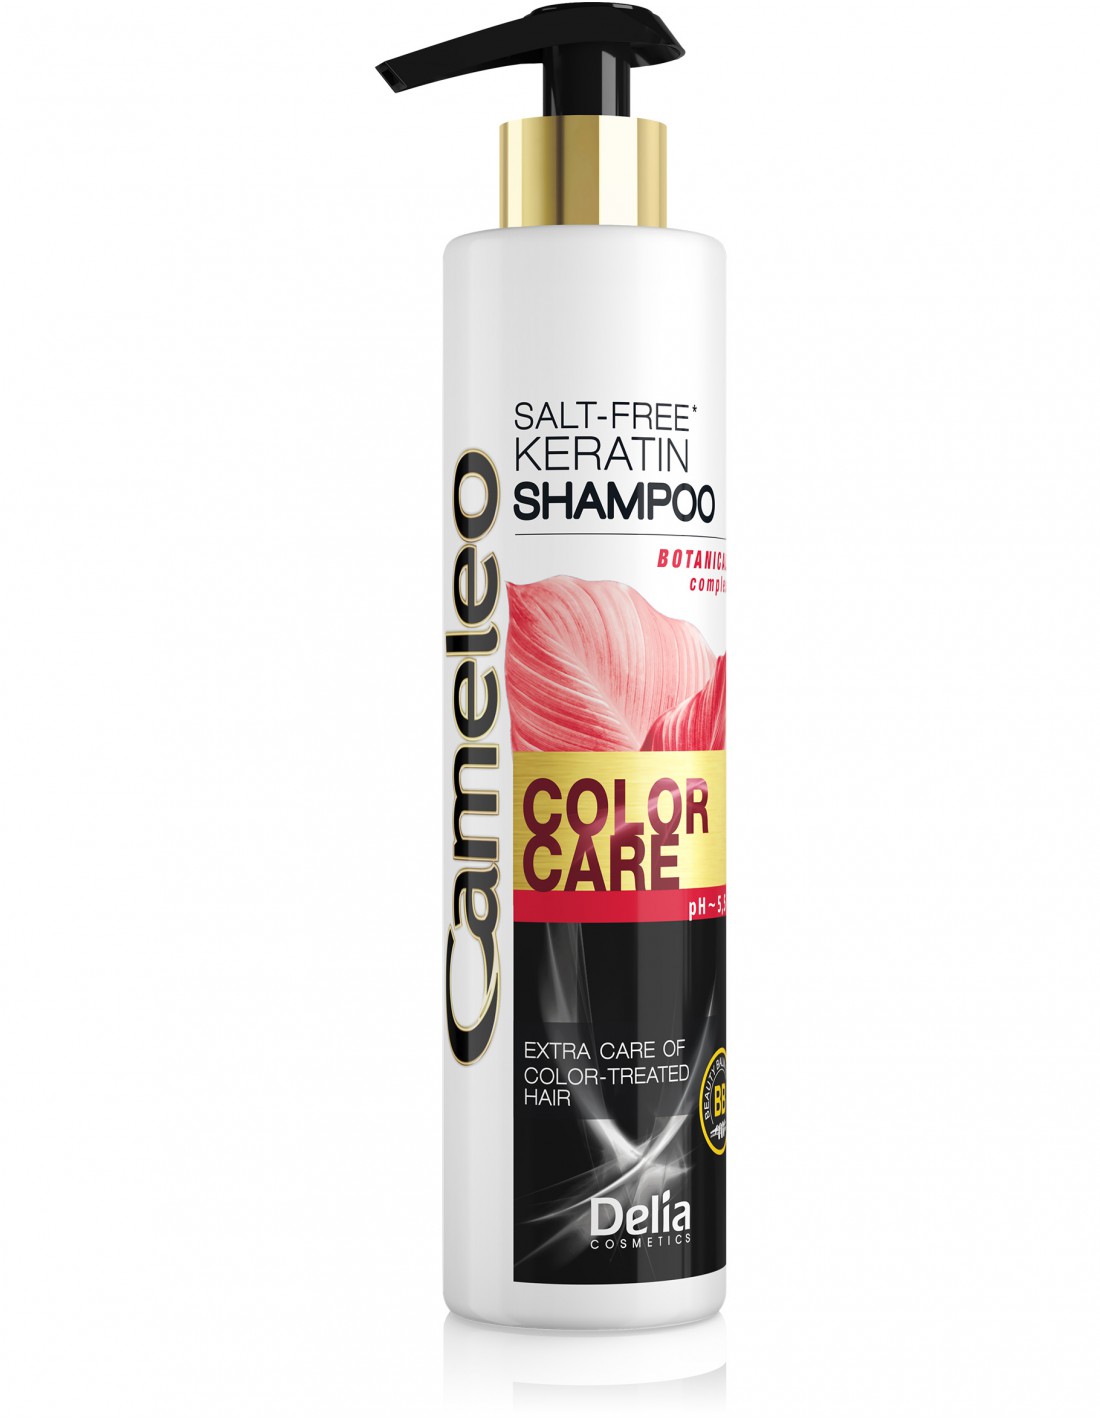 delia cosmetics cameleo szampon 5.0 włosy